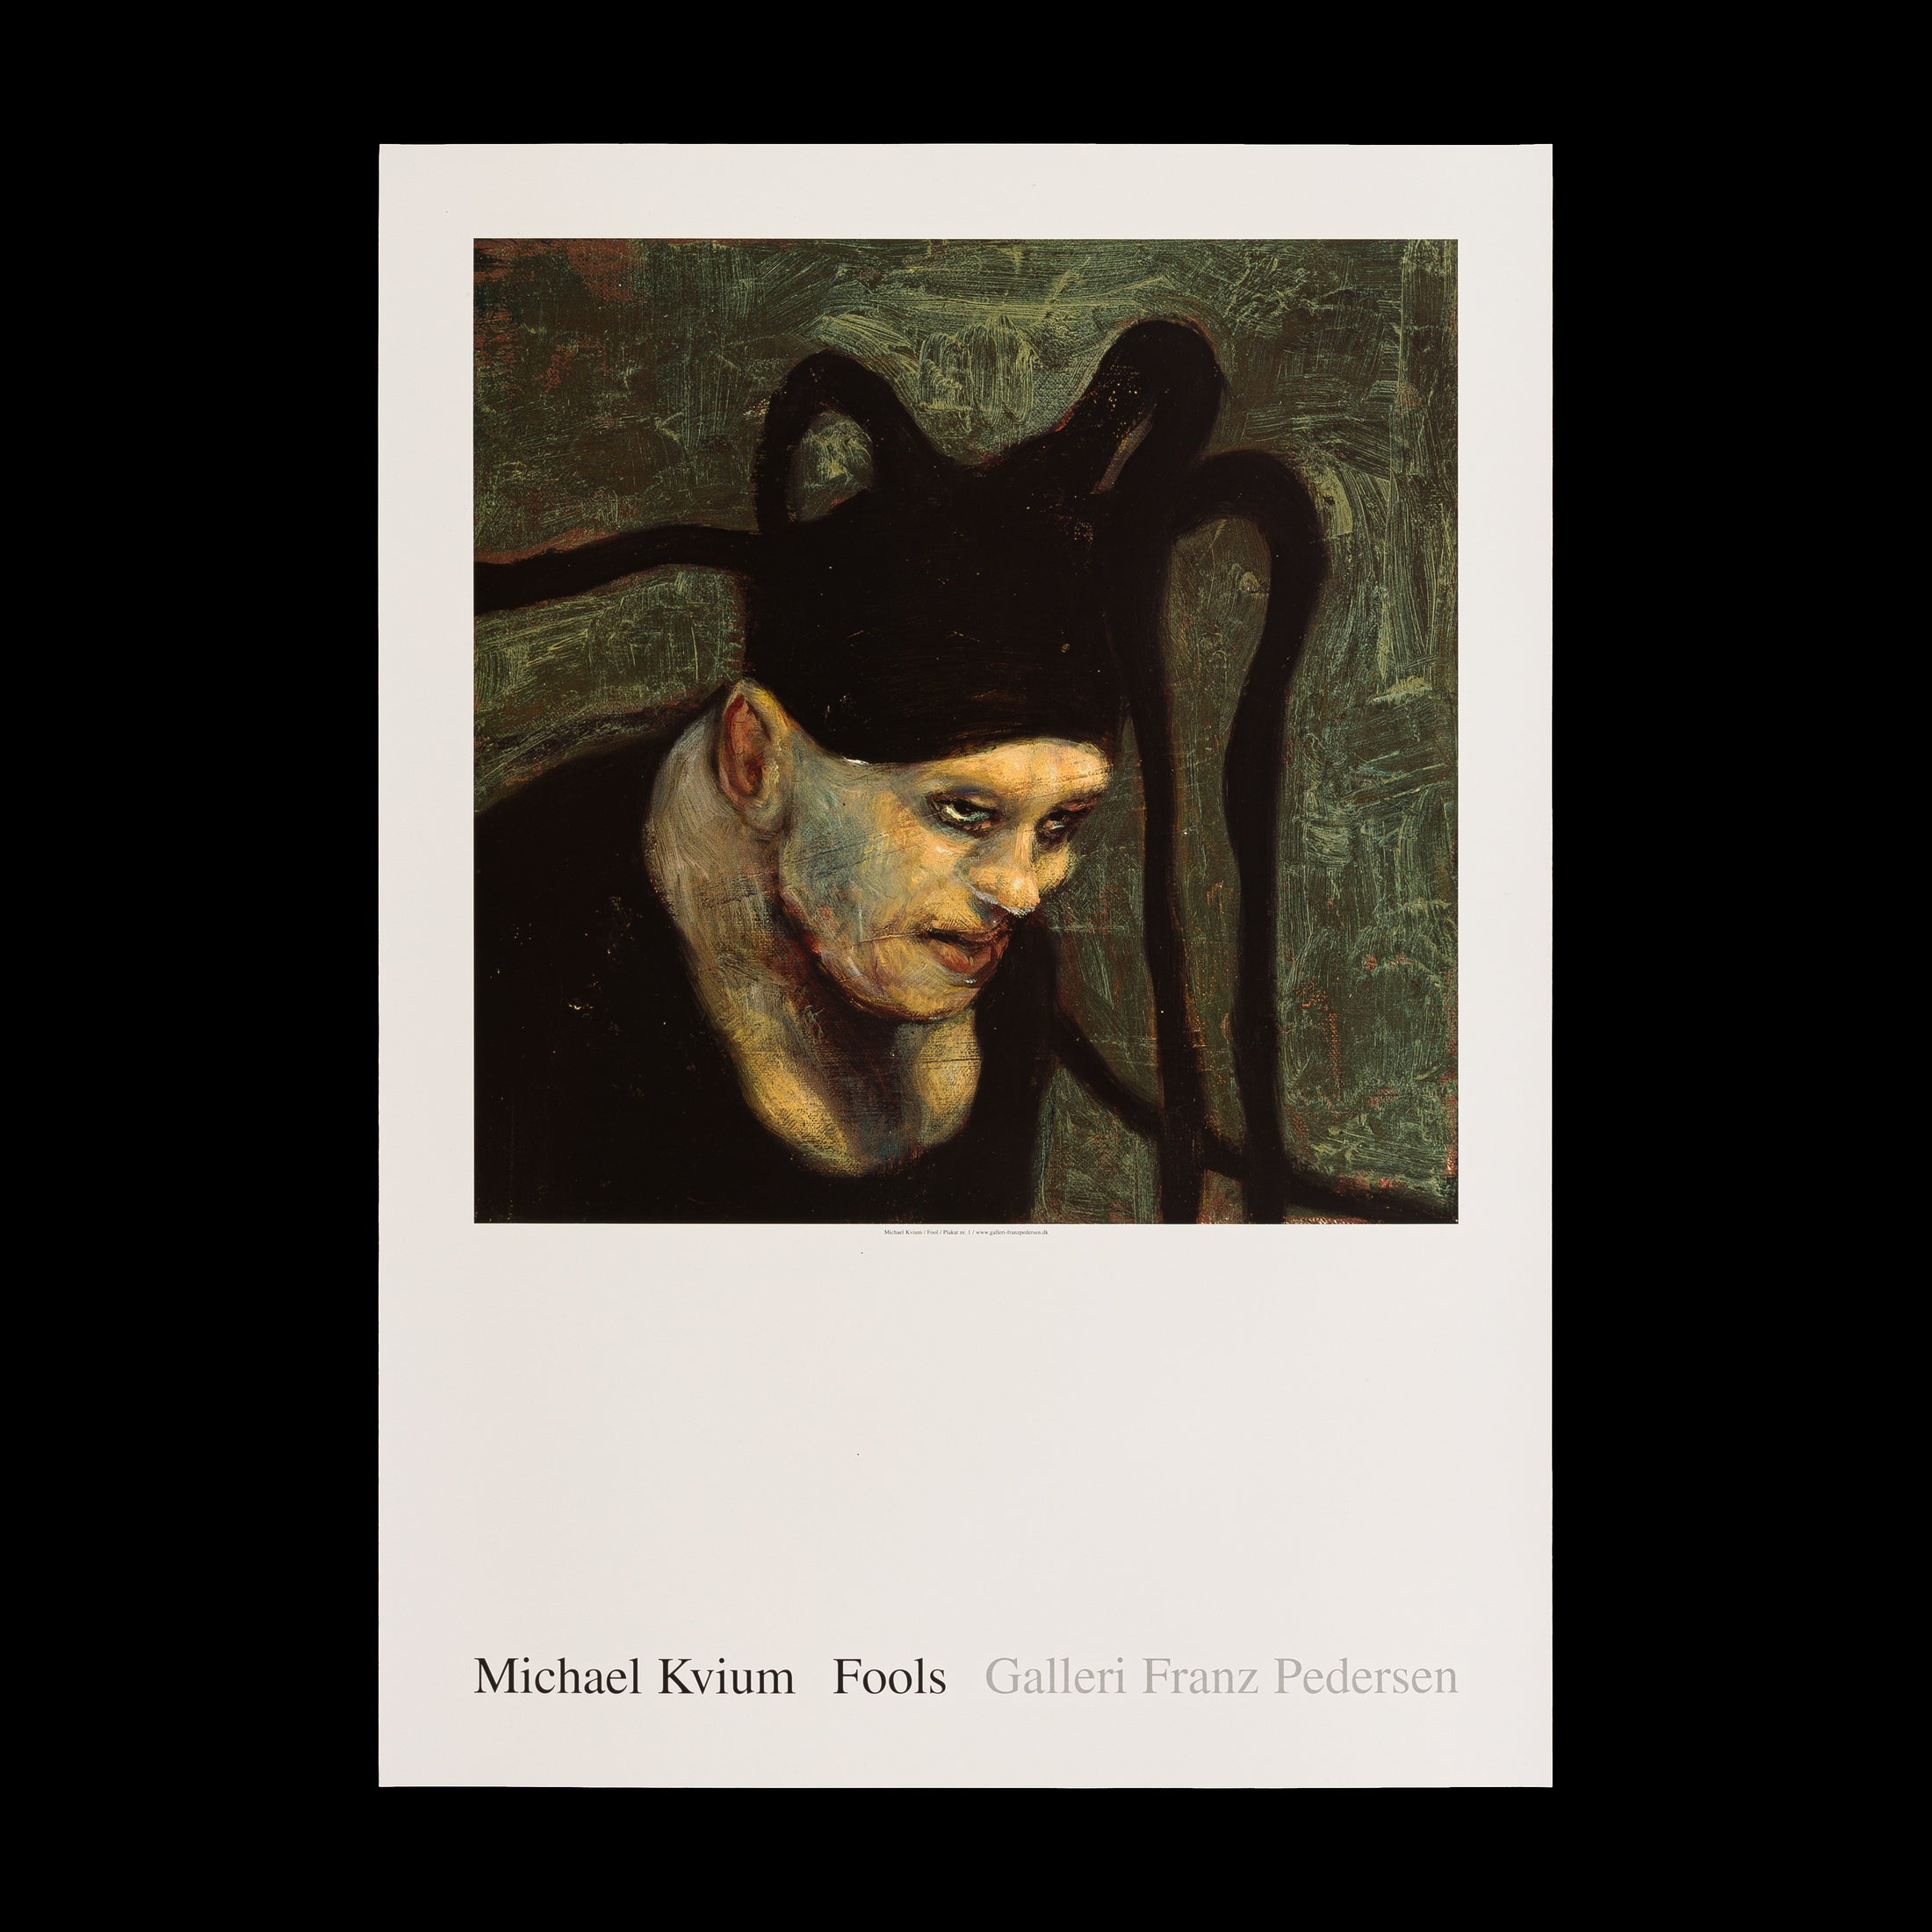 Michael Kvium plakat 'Fool no. 23' fra Galleri Franz Pedersen viser en intens og symbolsk figur, der repræsenterer menneskets skrøbelighed og fællesmenneskelighed, i størrelsen 70 x 50 cm, sælges indrammet.